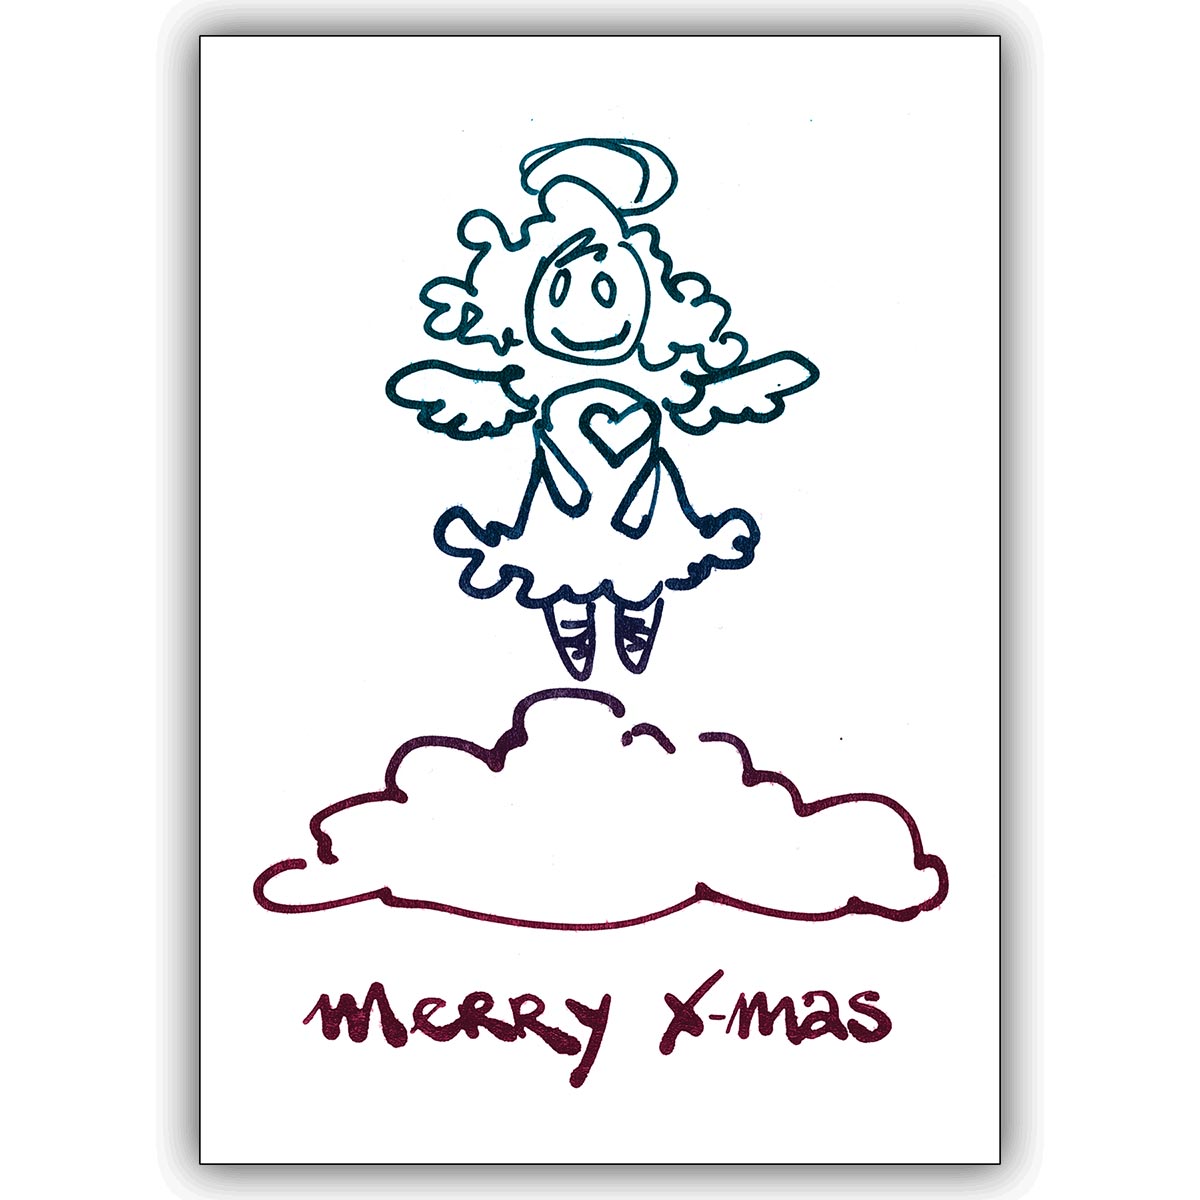 Süße Weihnachtskarte: Merry Xmas wünscht der Rauschgoldengel